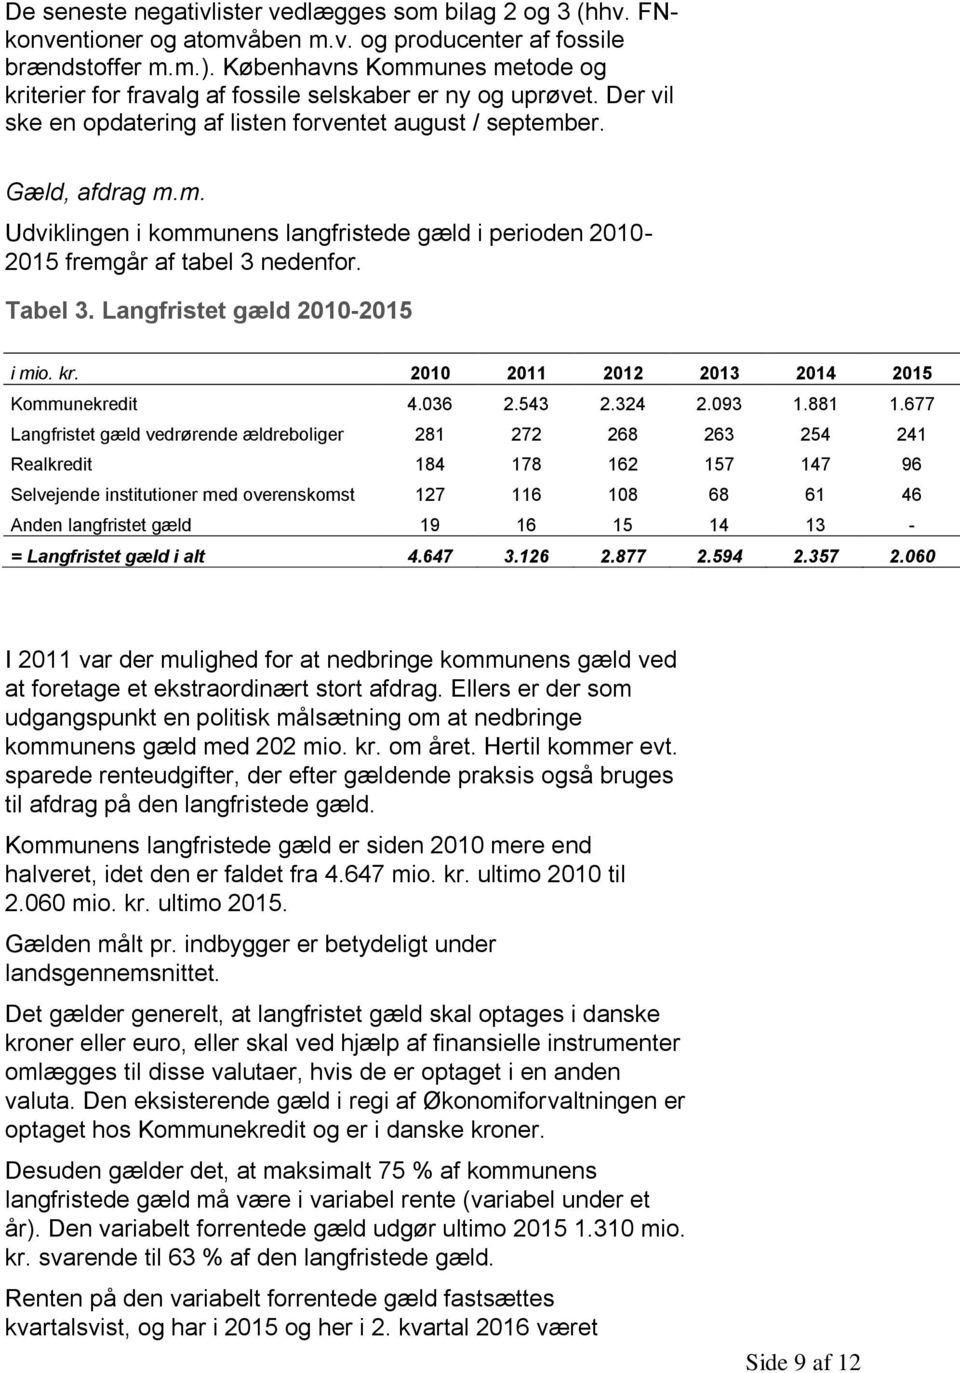 Tabel 3. Langfristet gæld 2010-2015 i mio. kr. 2010 2011 2012 2013 2014 2015 Kommunekredit 4.036 2.543 2.324 2.093 1.881 1.